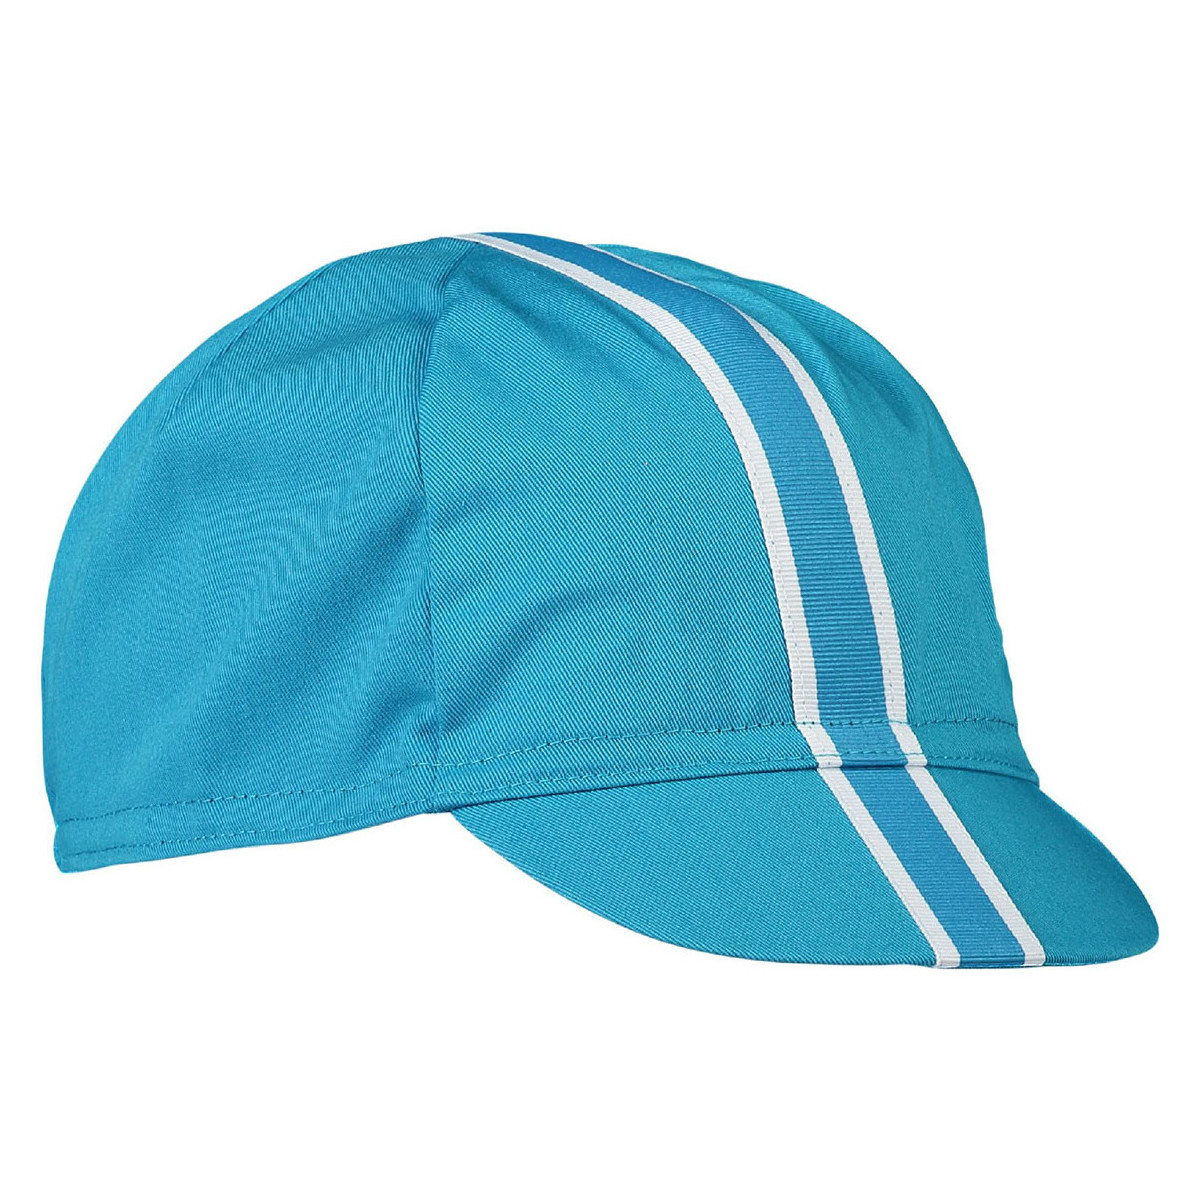 Textil kiegészítők Sapkák Poc ESSENTIAL CAP BASALT BLUE SS2158205-1597 Kék